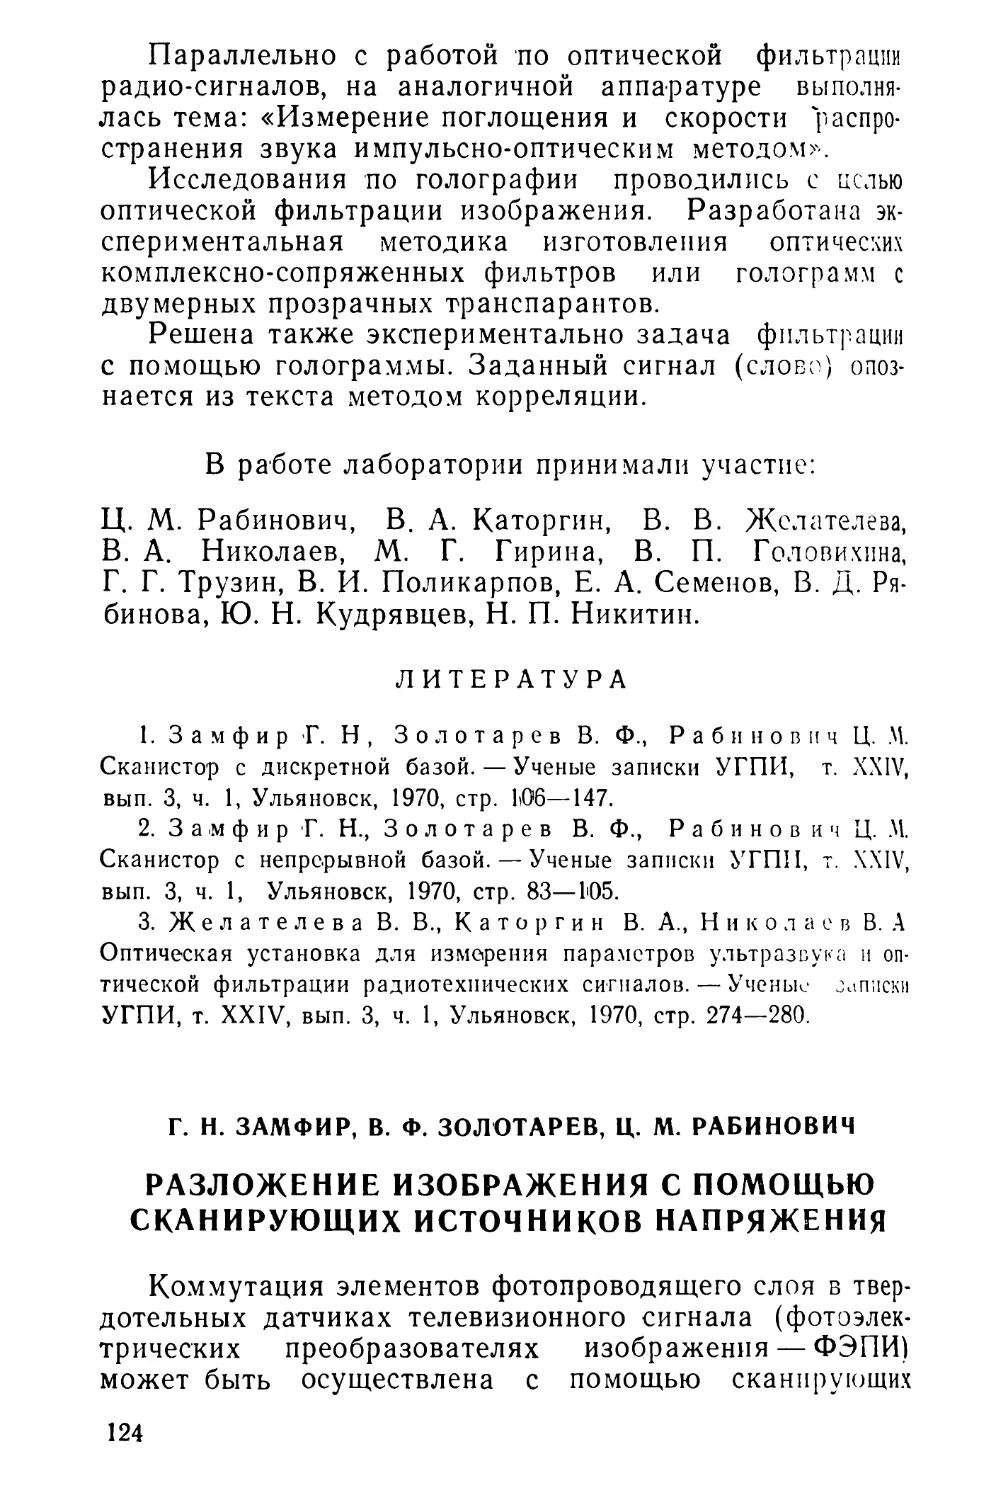 Г. Н. 3амфир, В. Ф. Золотарев, Ц. М. Рабинович. Разложение изображения с помощью сканирующих источников напряжения